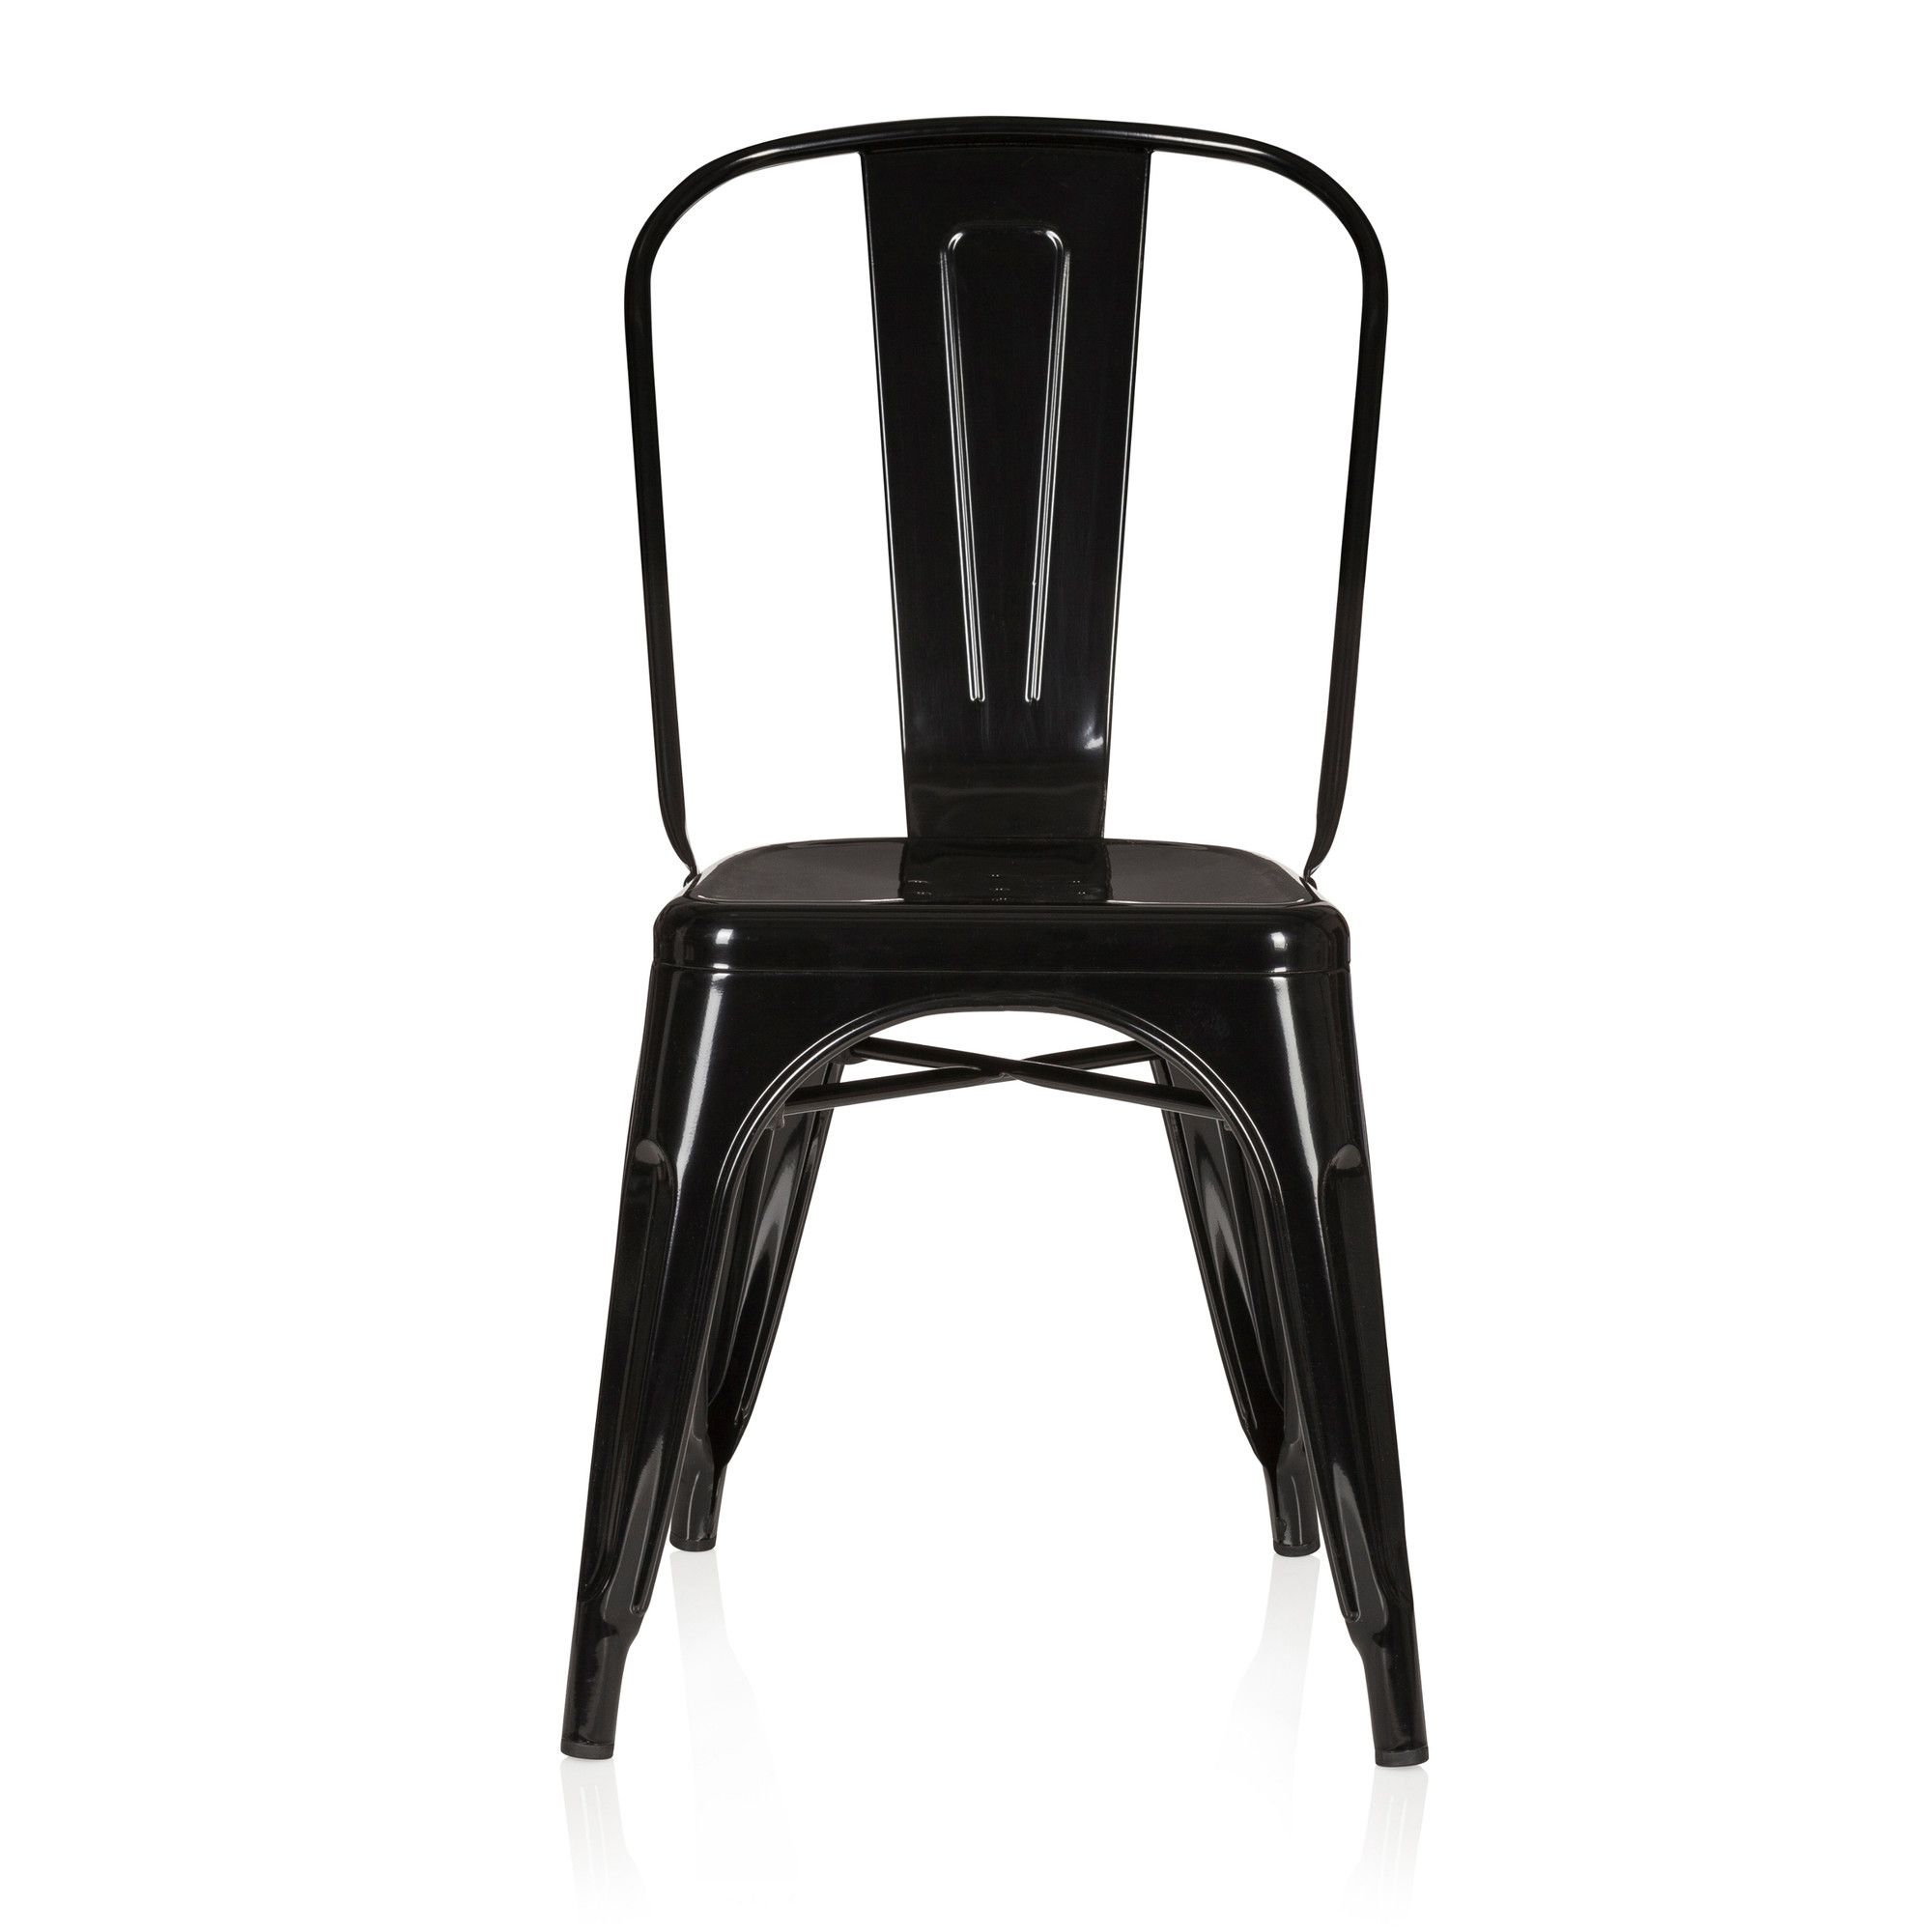 chaise bistrot vantaggio comfort - hjh office - métal noir - empilable - bonne stabilité - gastronomie ou maison